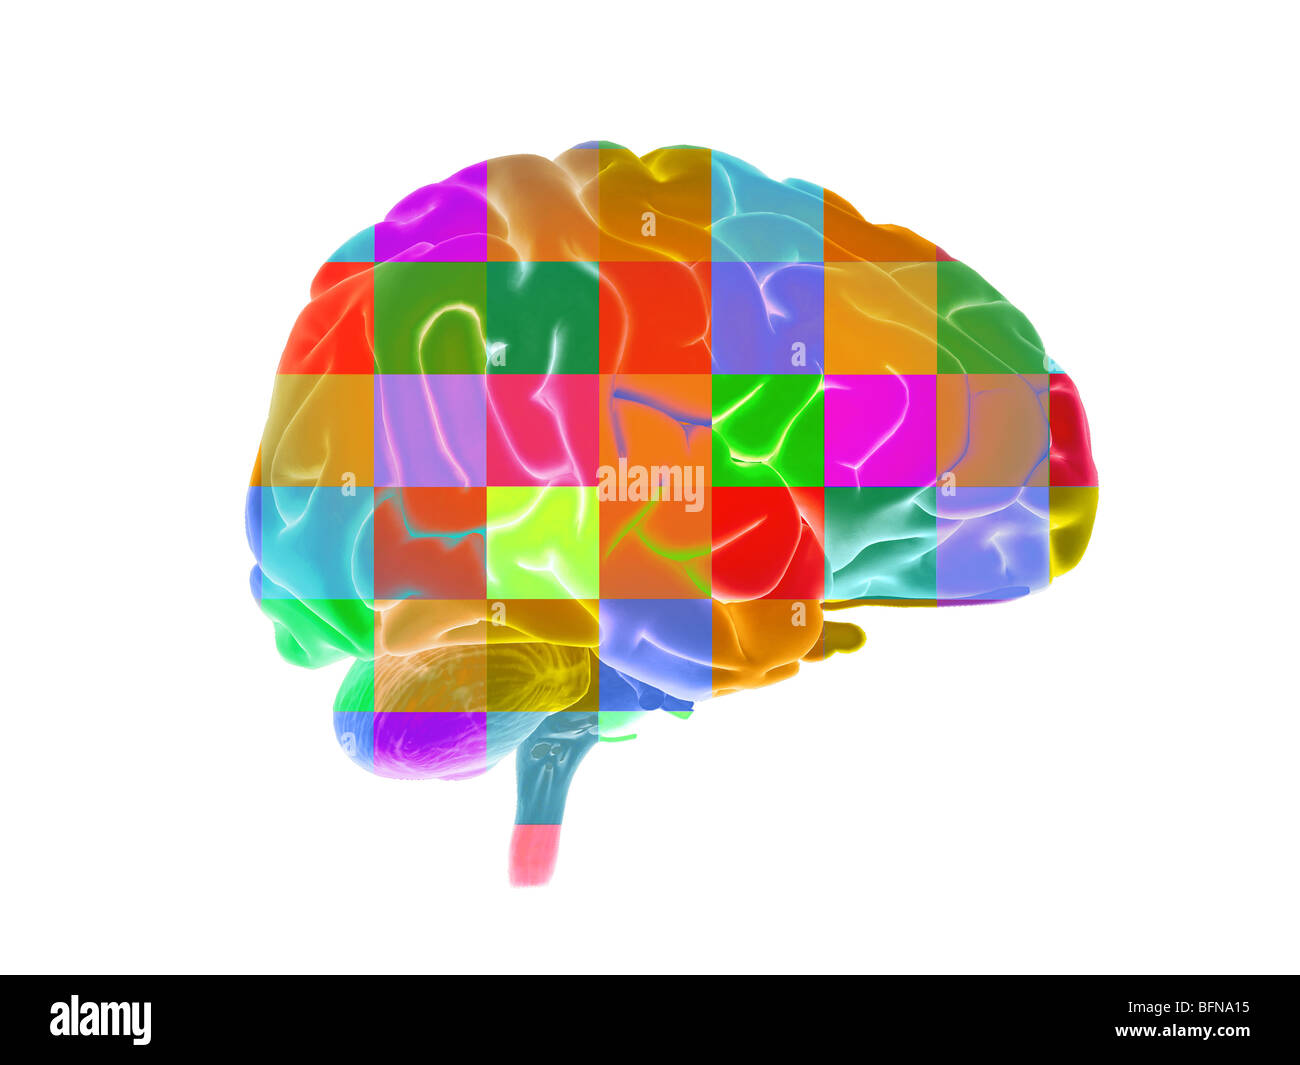 Illustrazione del cervello umano Foto Stock